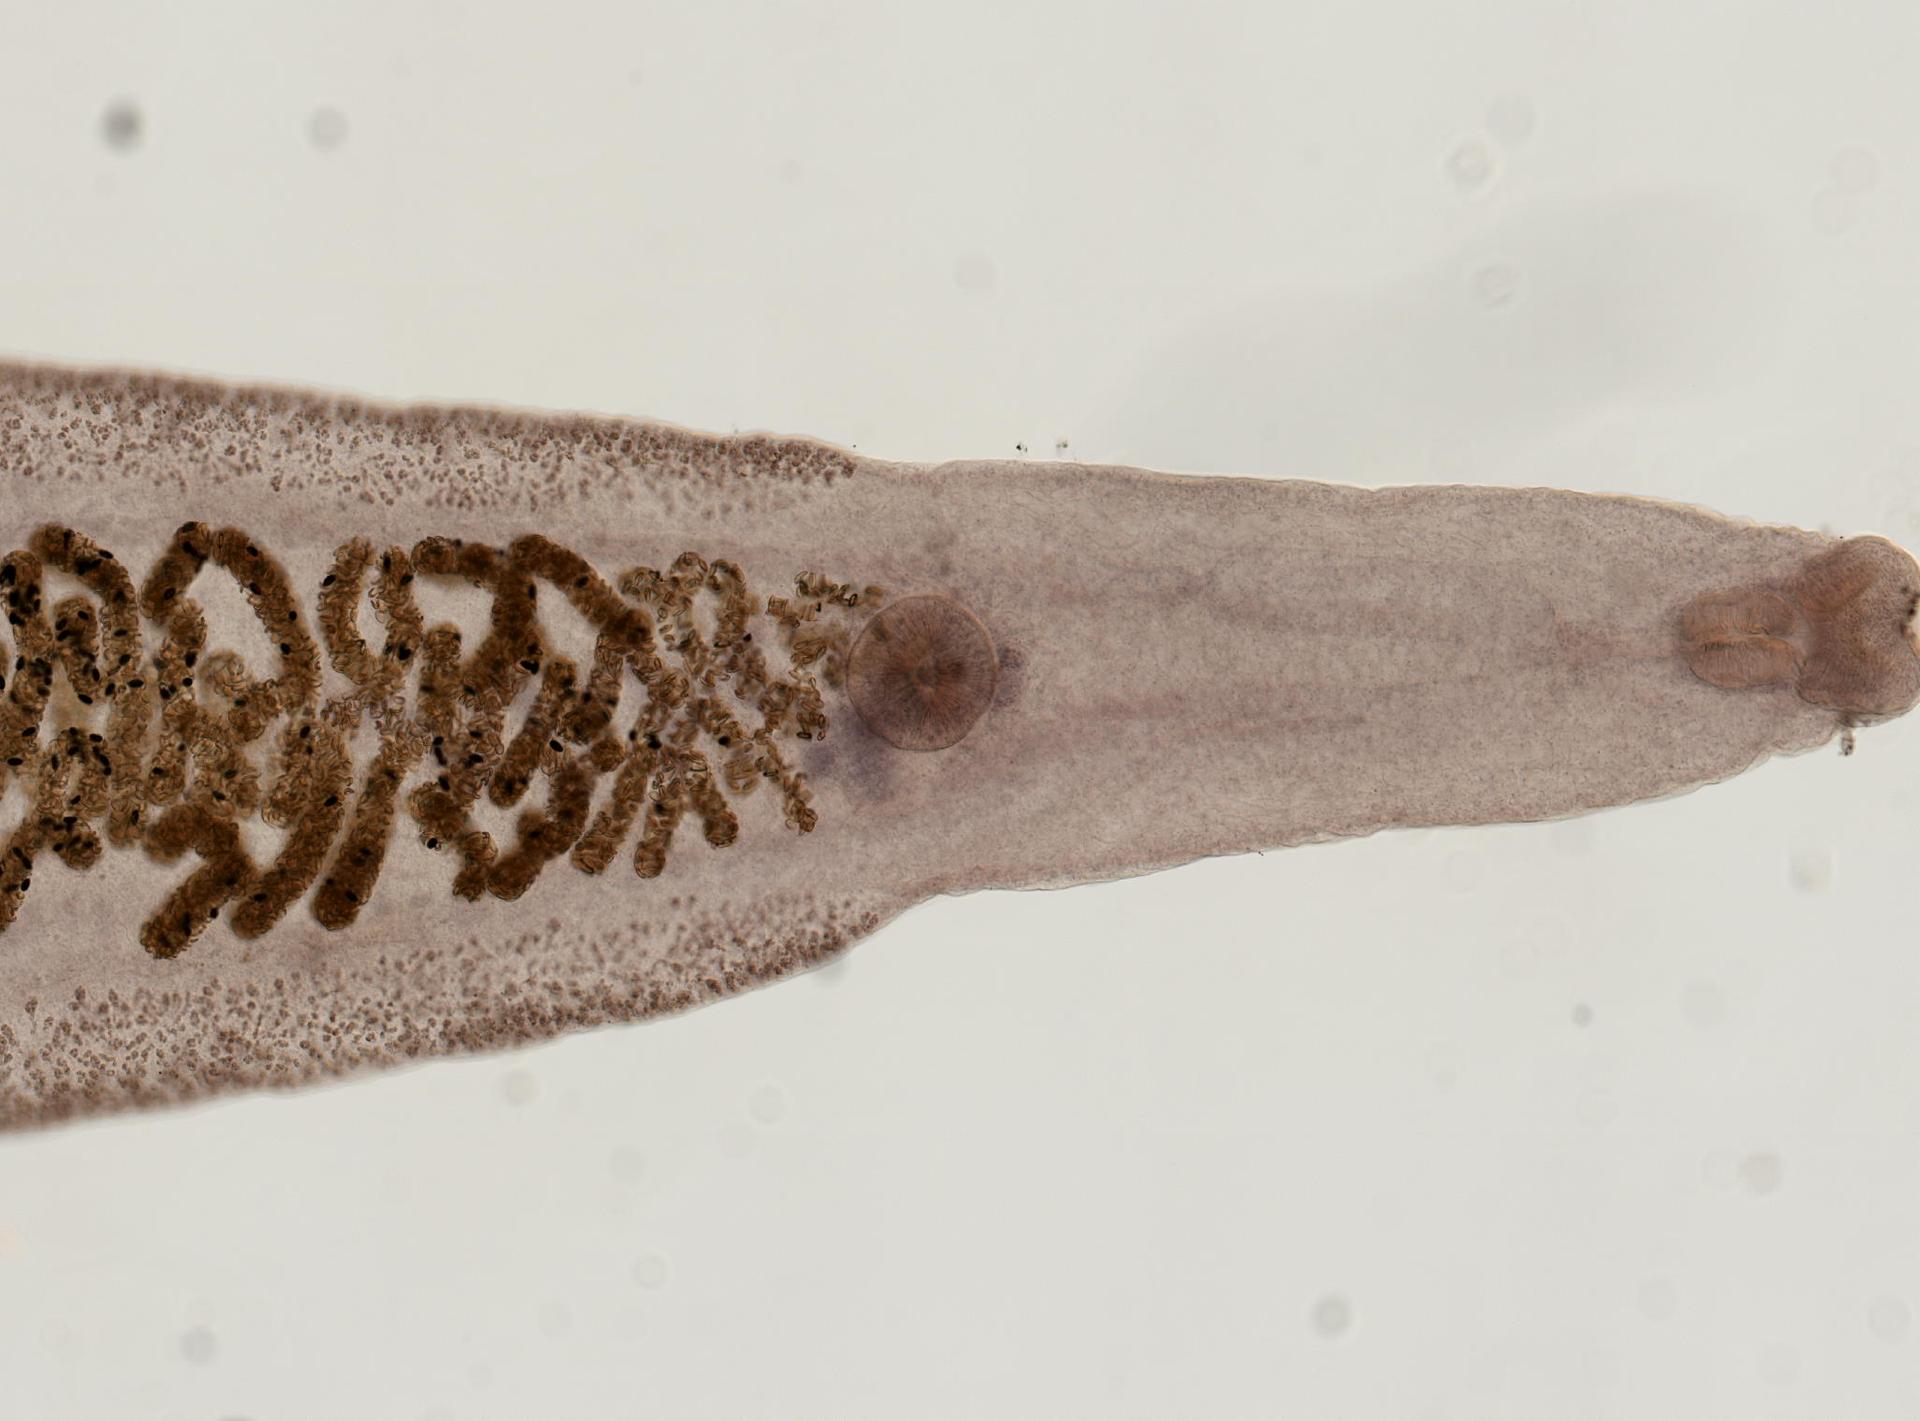 Clonorchis sinensis image